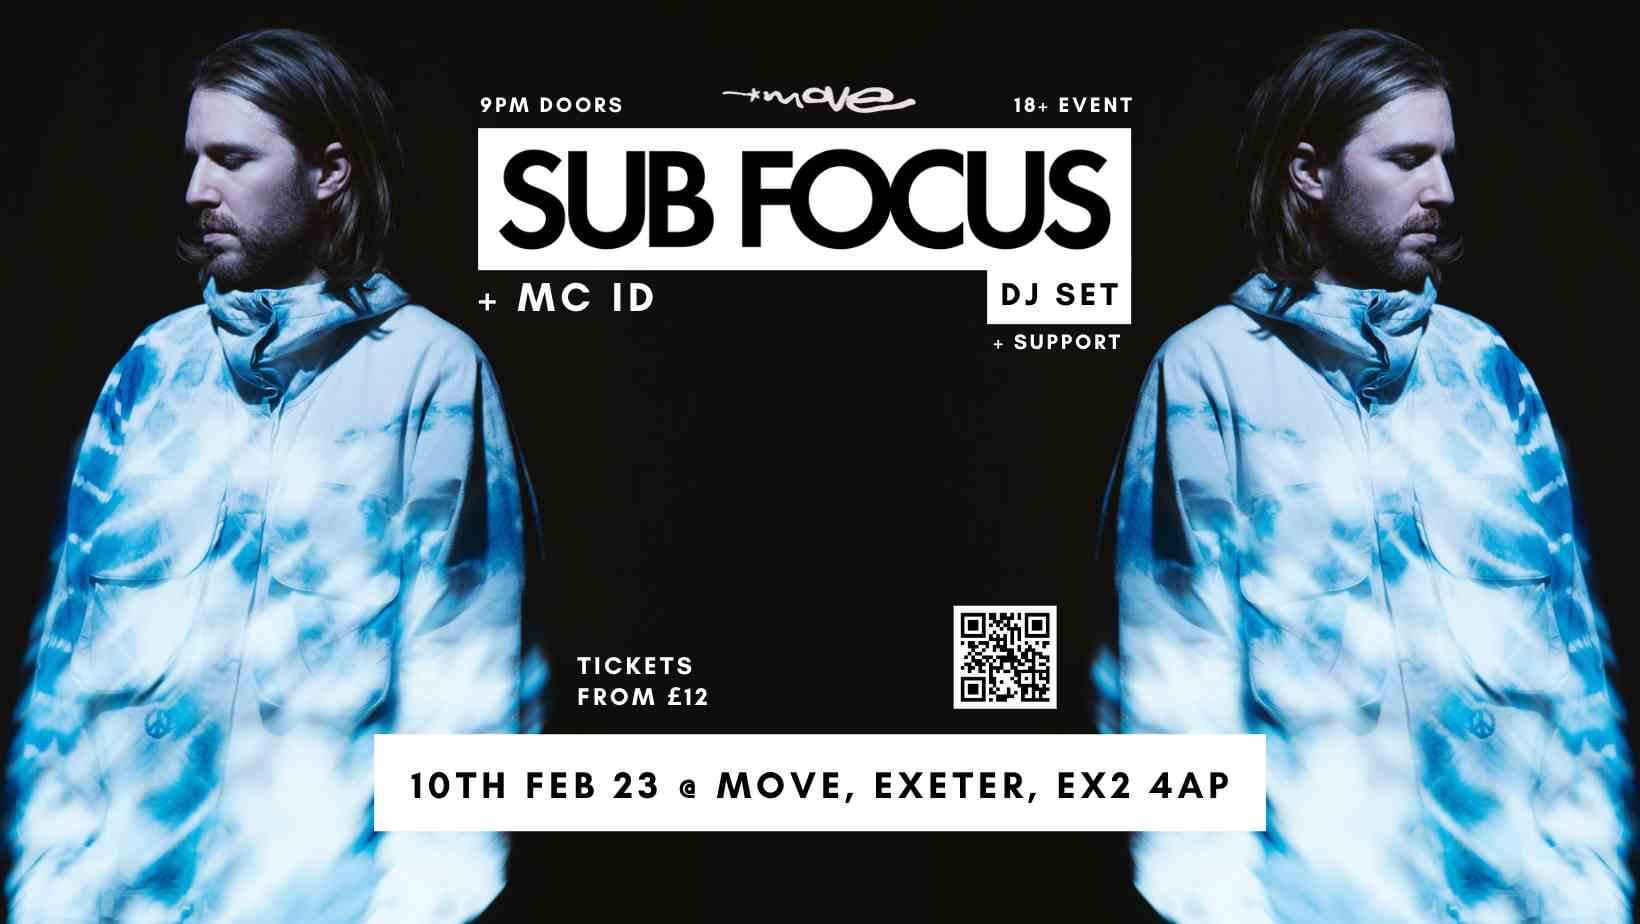 SUB FOCUS & MC ID doors 9pm last entry 11pm